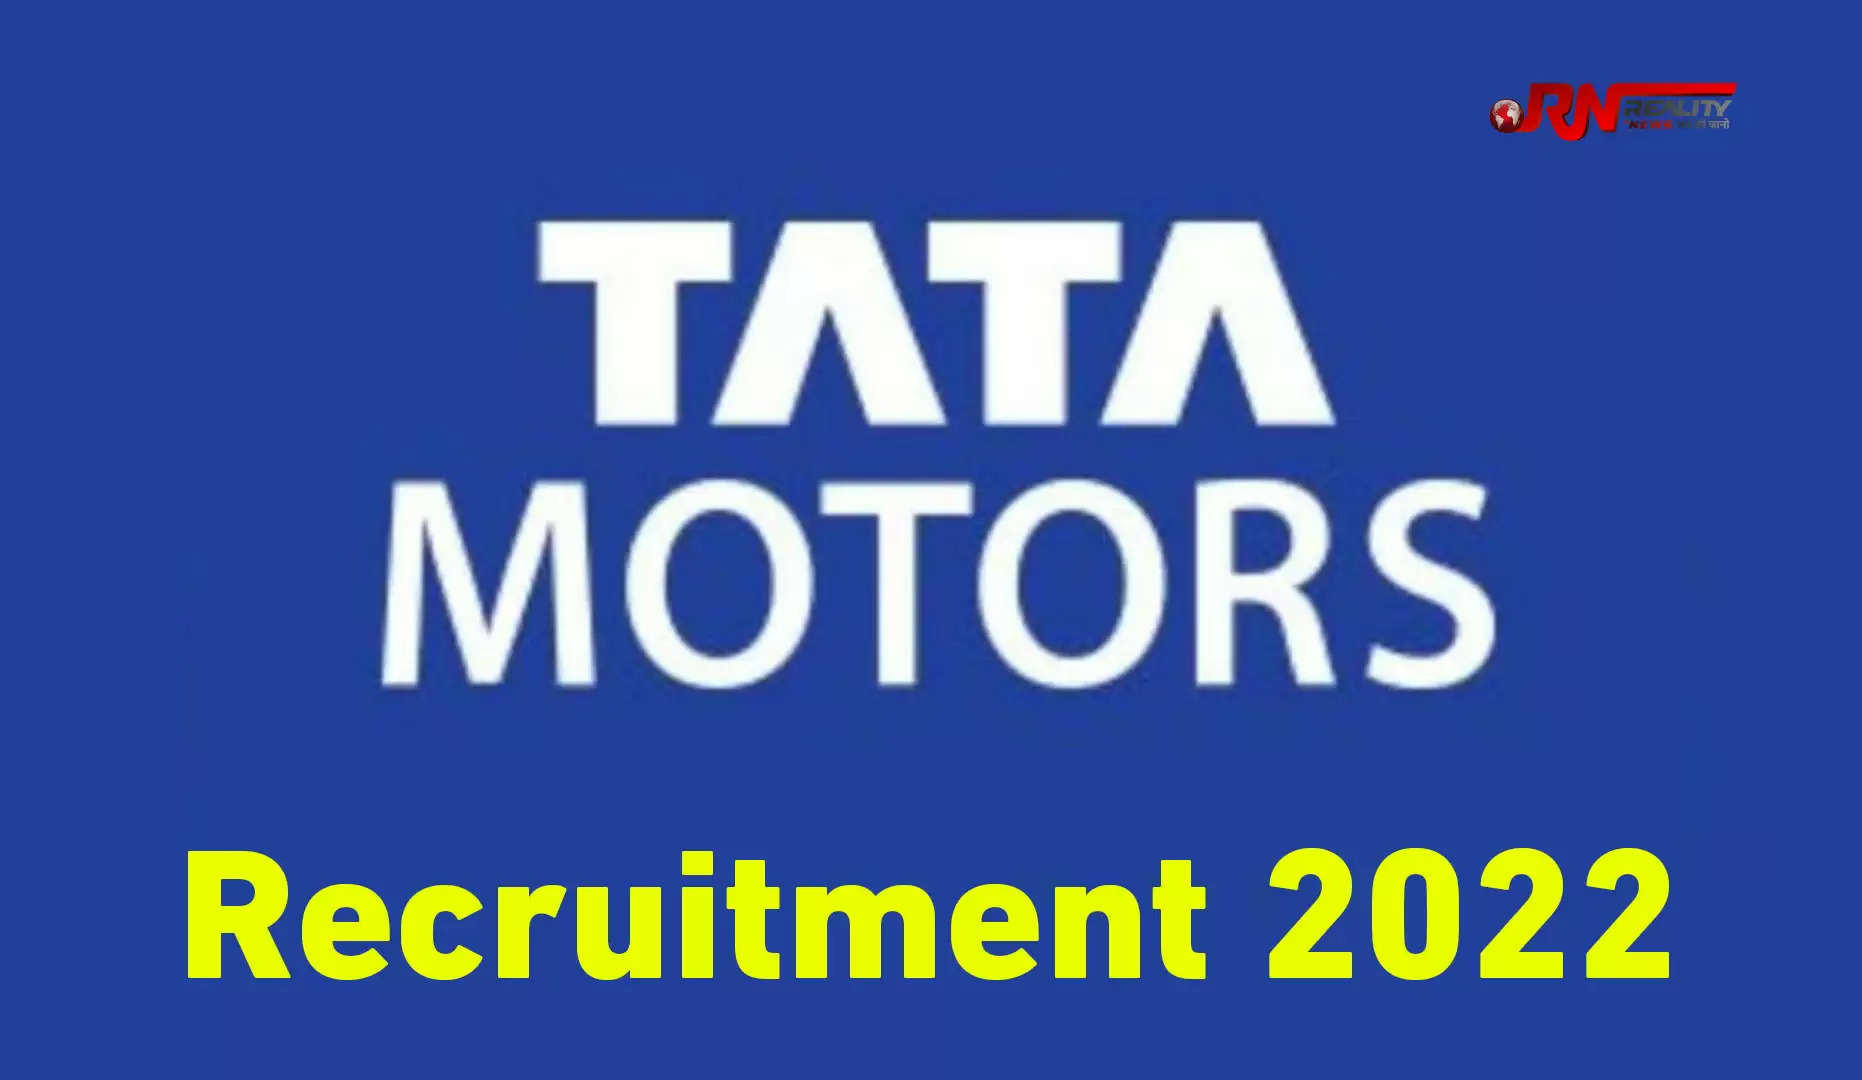 Tata Motors Recruitment 2022 अगर आप भी निजी कंपनी में अच्छी नौकरी की तलाश में हैं, तो यह खबर आपके लिए है। टाटा मोटर अपने यहां युवाओं को नौकरी का मौका दे रही है। टाटा कंपनी गुजरात और उत्तराखंड स्थित अपने प्लांट में 200 युवाओं को भर्ती करने जा रही है। इसके लिए कंपनी औद्योगिक प्रशिक्षण संस्थान शाहपुर में 08 सितम्बर को कैंपस साक्षात्कार का आयोजन कर रही है। इसमें टाटा मोटर गुजरात और टाटा मोटर्स लिमिटेड उत्तराखंड साक्षात्कार के माध्यम से  200 पदों को भरेगी।